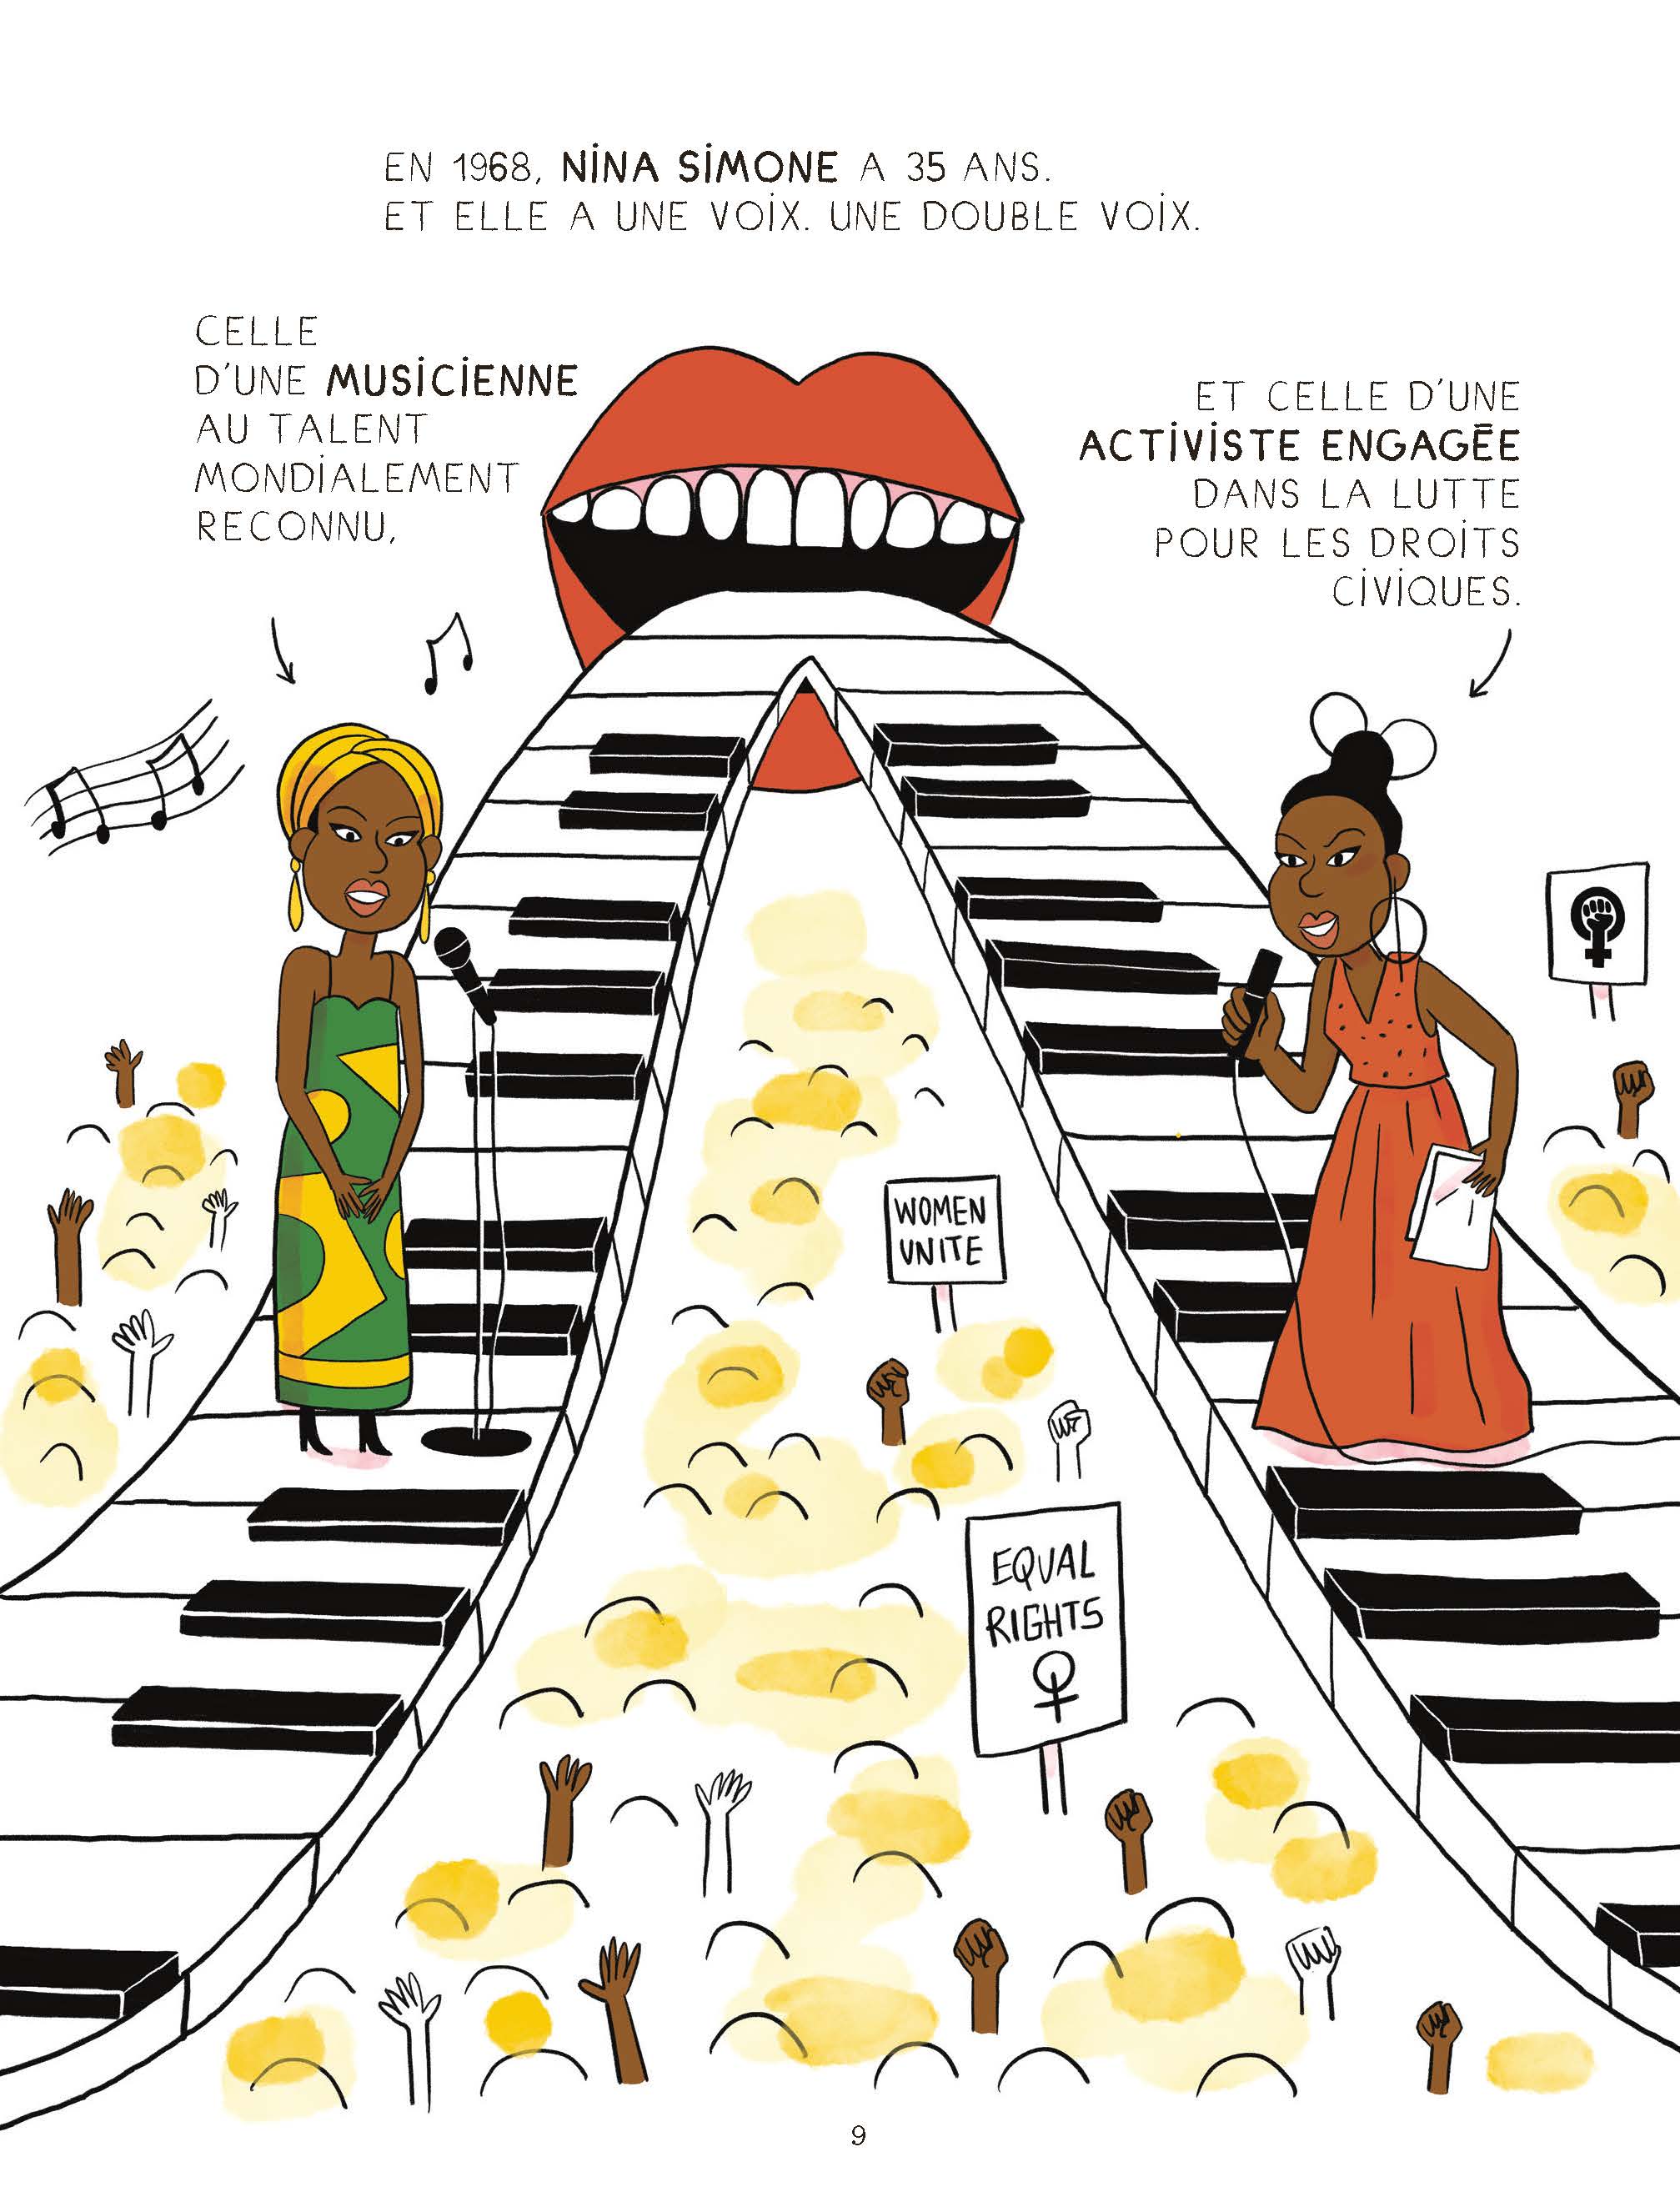 Music Queens : Une Histoire Du Girl Power Et De La Pop... En Chansons !